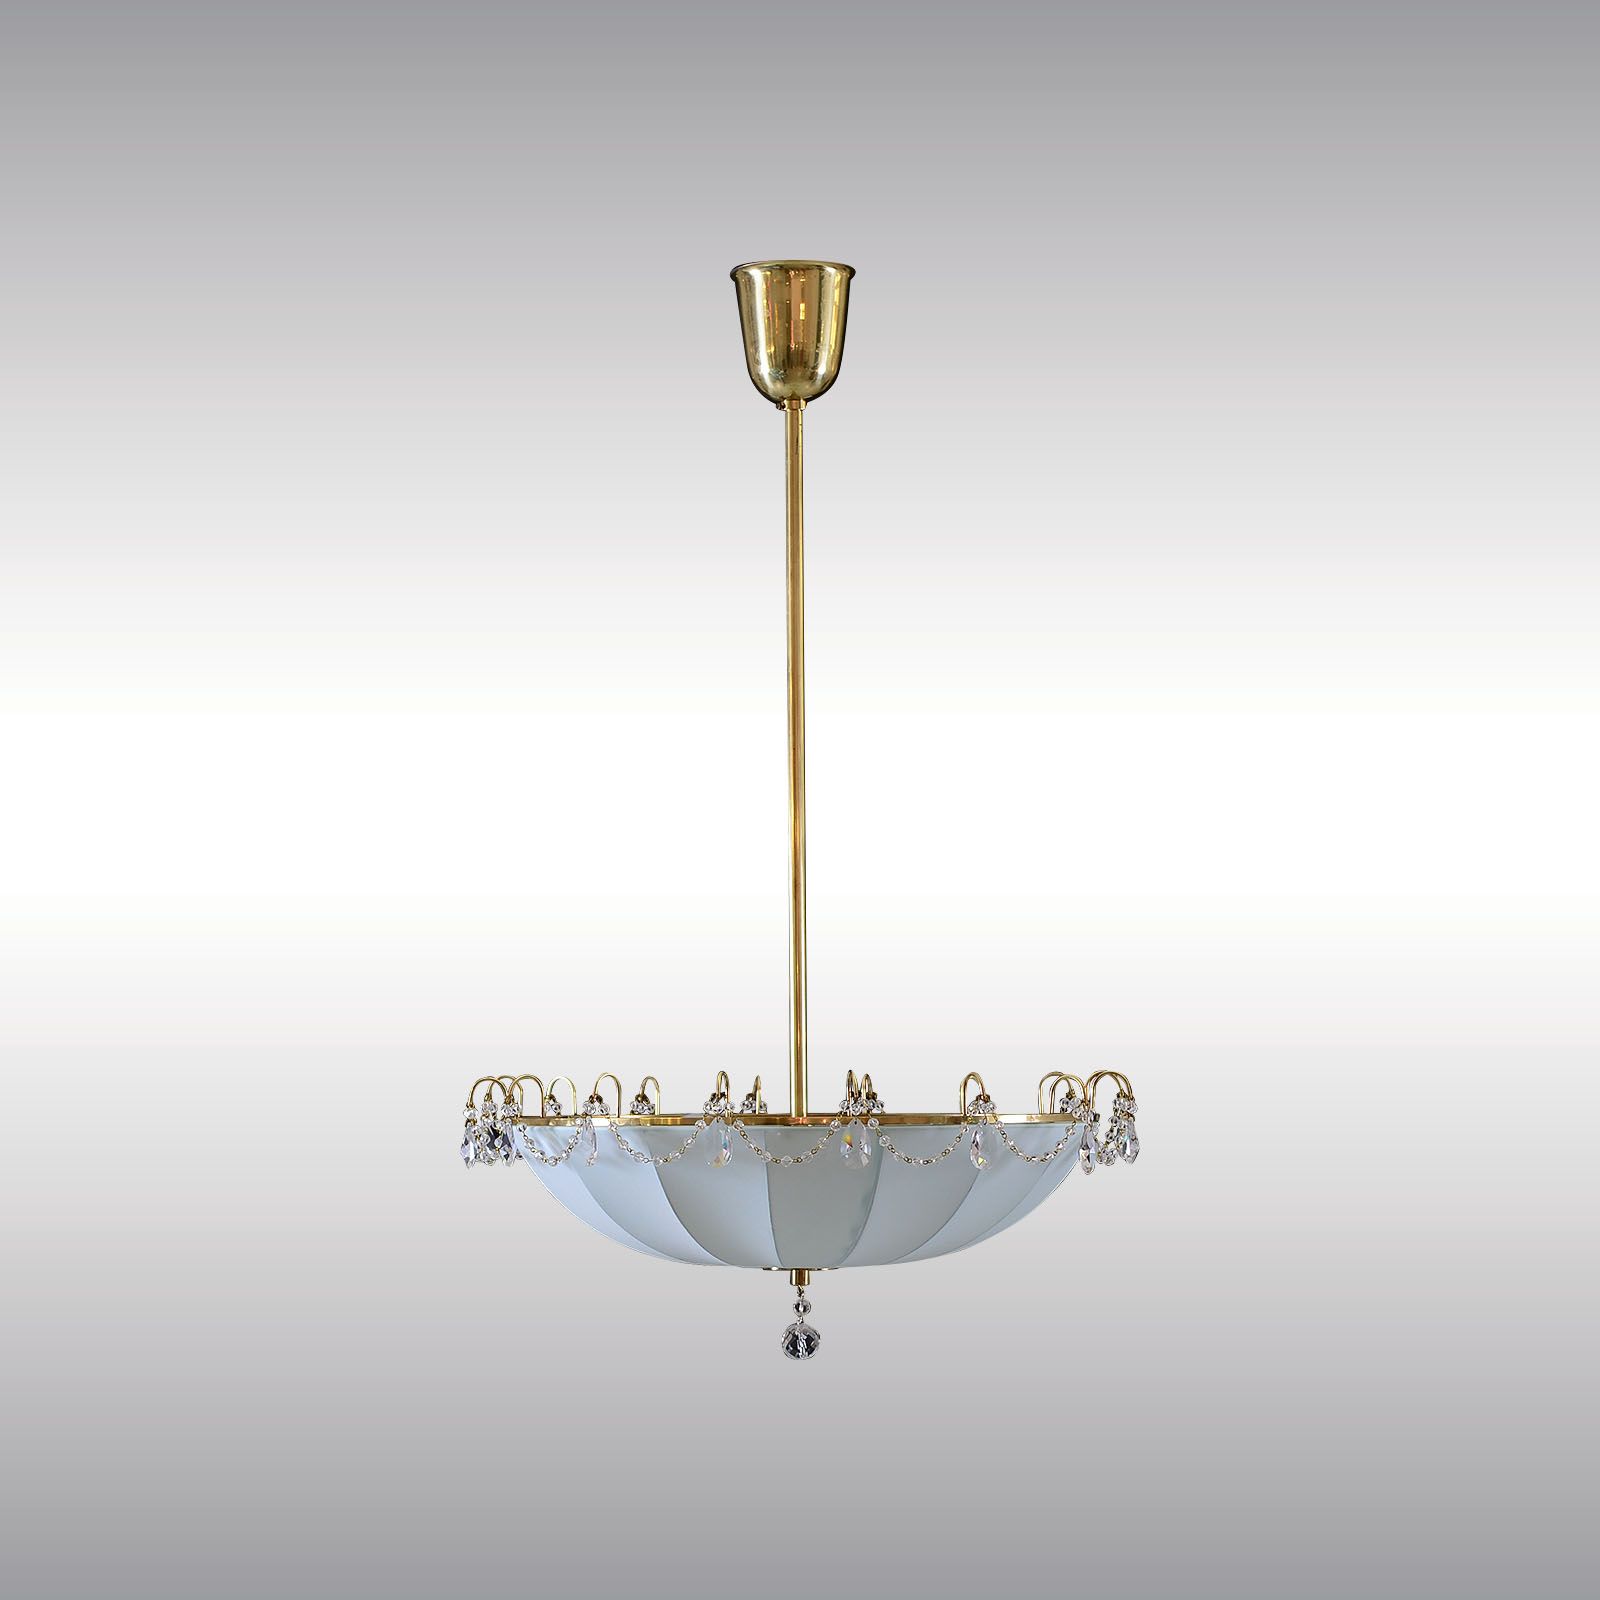 WOKA LAMPS VIENNA - OrderNr.: 9747|KARUSSELL - Design: WOKA